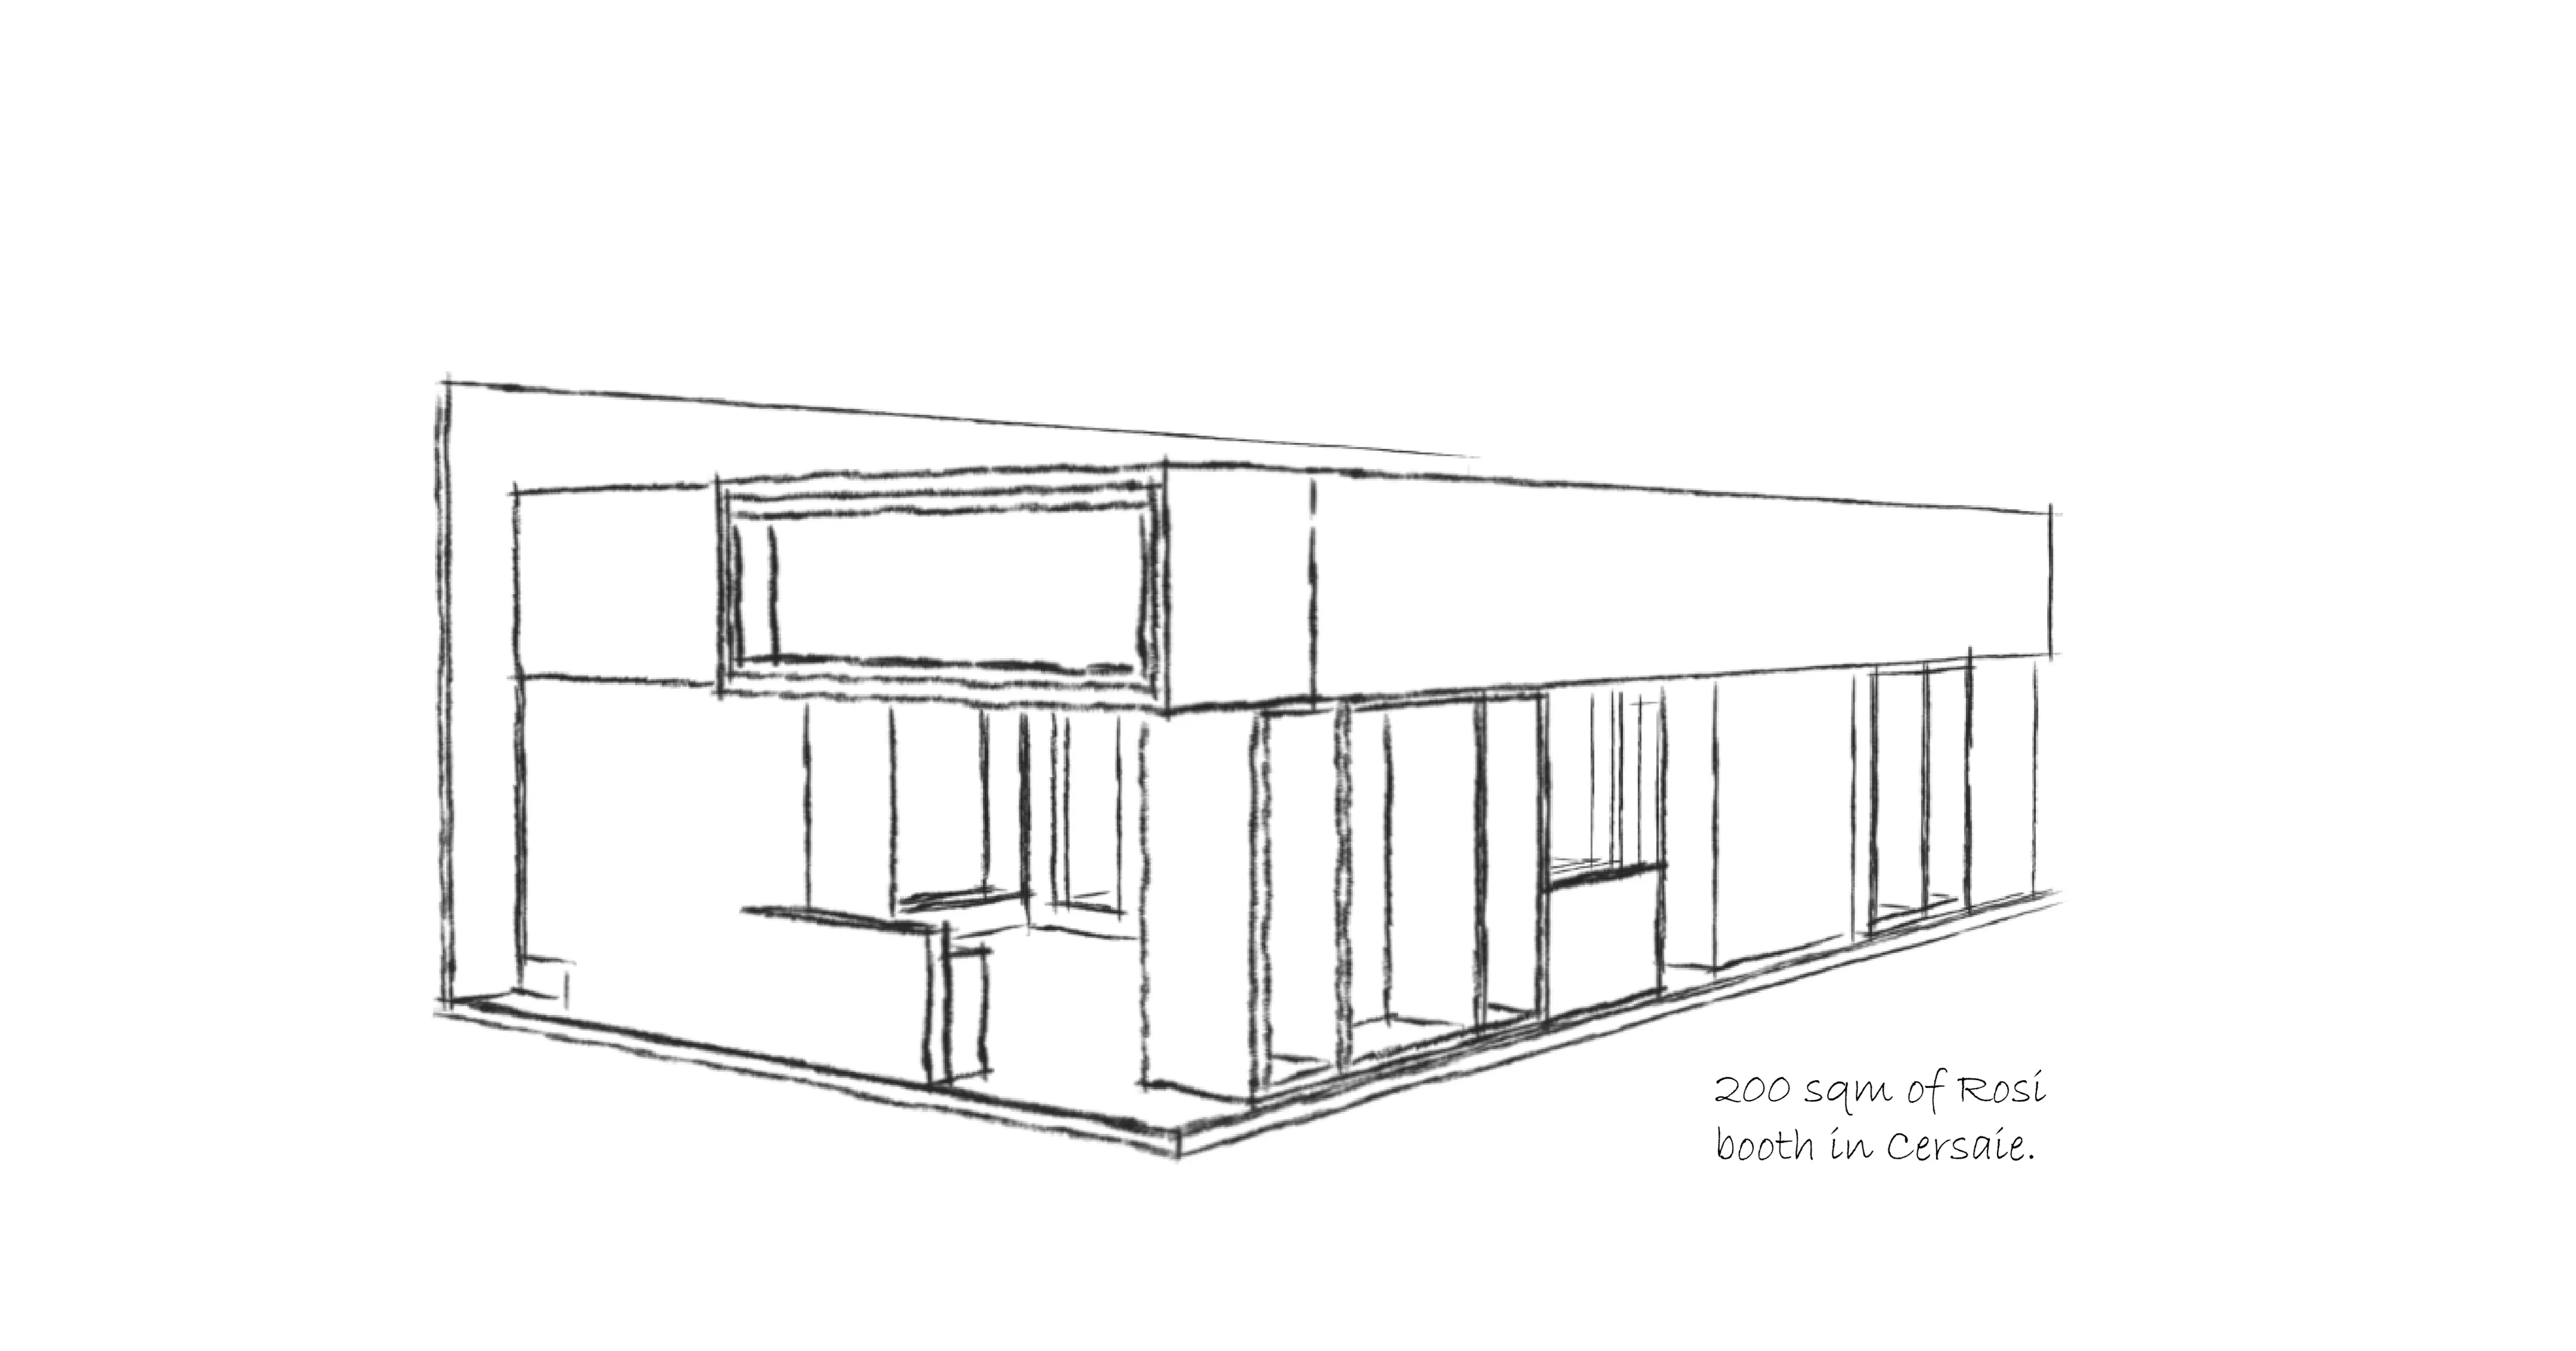   4 طراحی غرفه و غرفه سازی نمایشگاهی رُسی نمایشگاه کاشی و سرامیک 1401 شهر آفتاب 